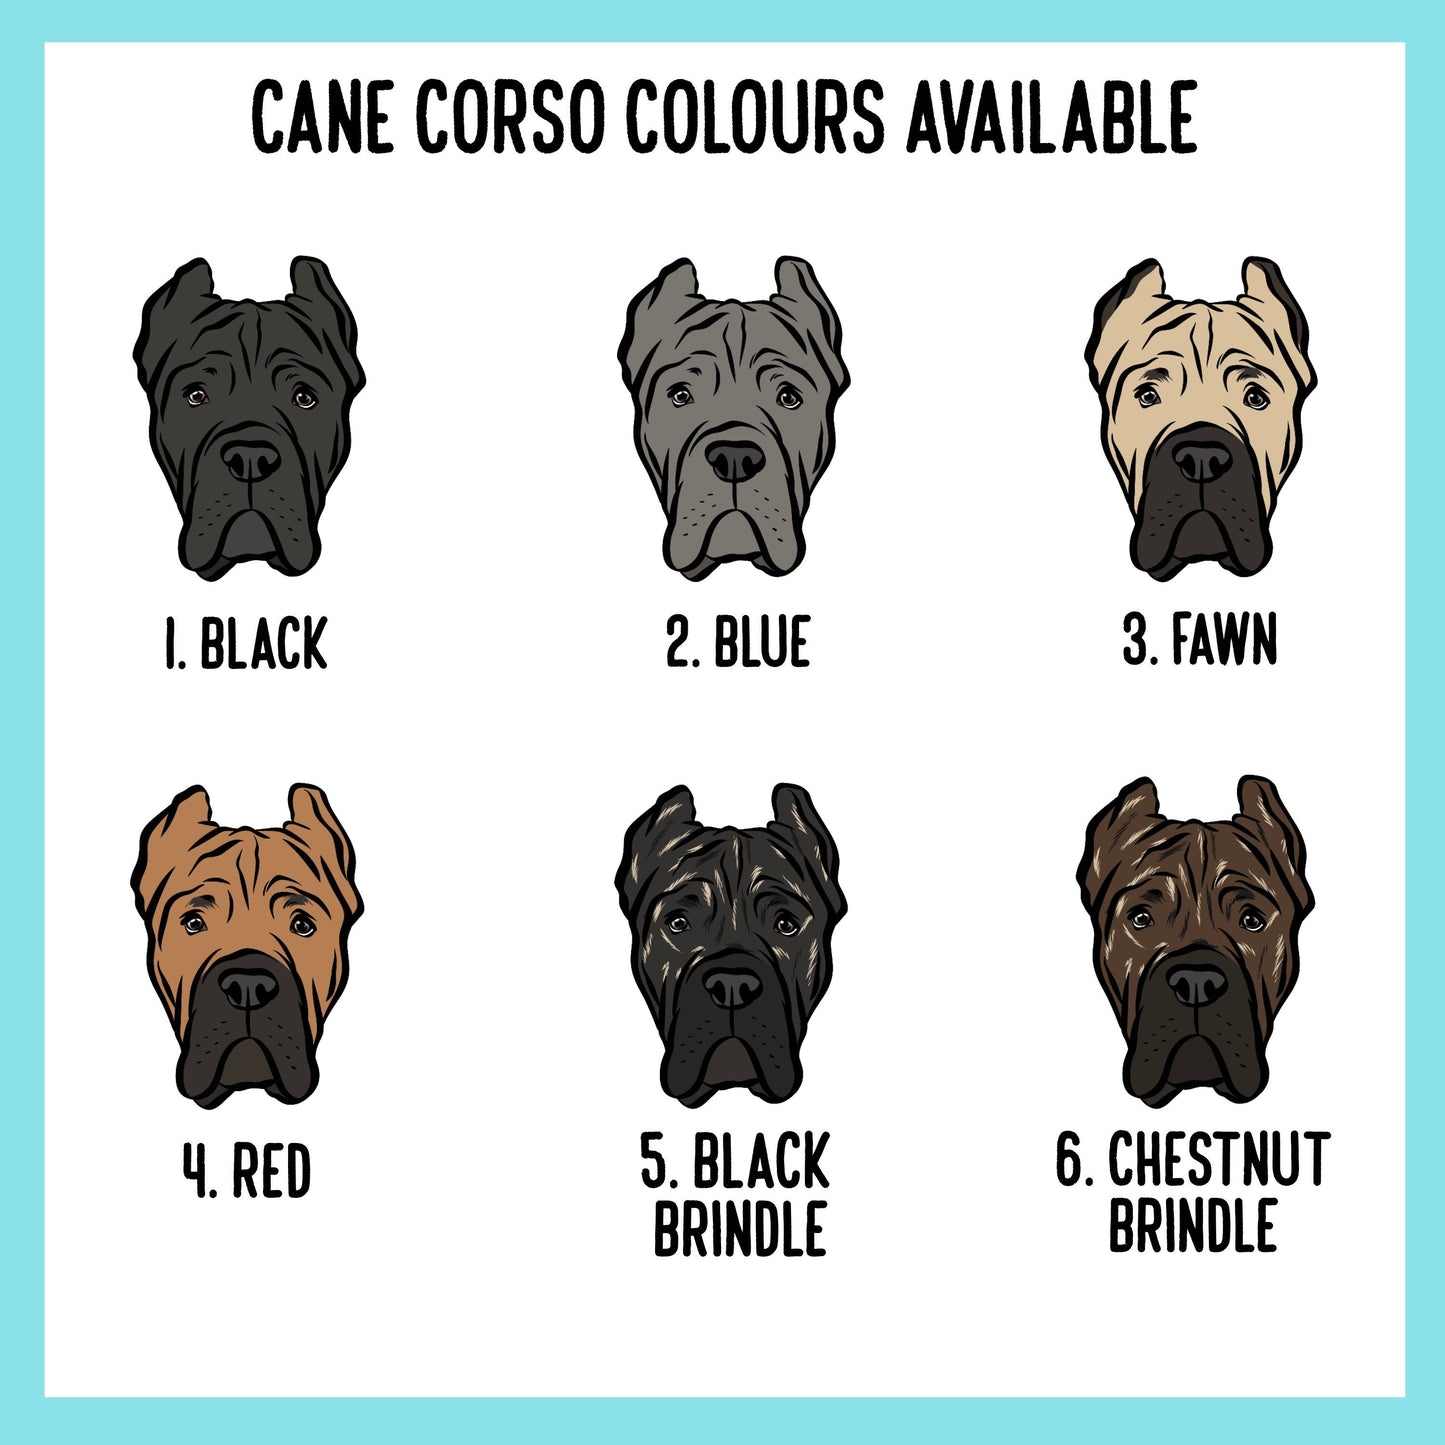 Cane Corso Mug/ Personalised Cane Corso Face Coffee Mug/ Customised Pet Portrait Ceramic Mug/ Cane Corso Owner Christmas Mug Gift/ Dog Mug